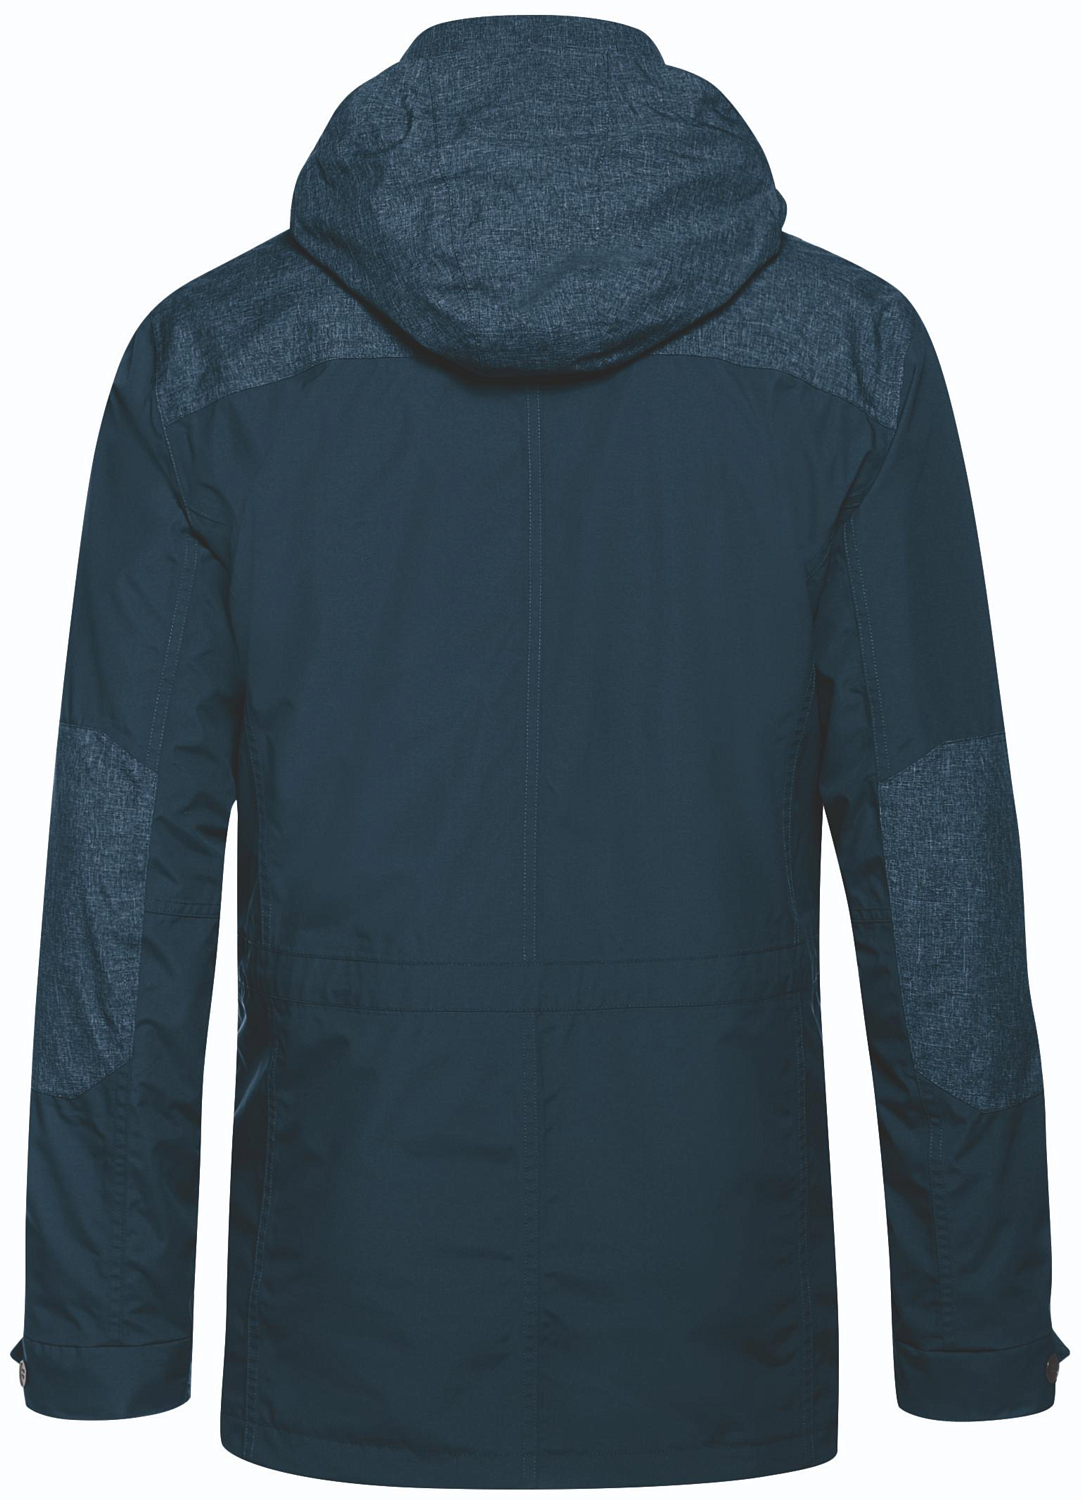 Куртка для активного отдыха Maier 2018-19 Pilton M bluewing teal